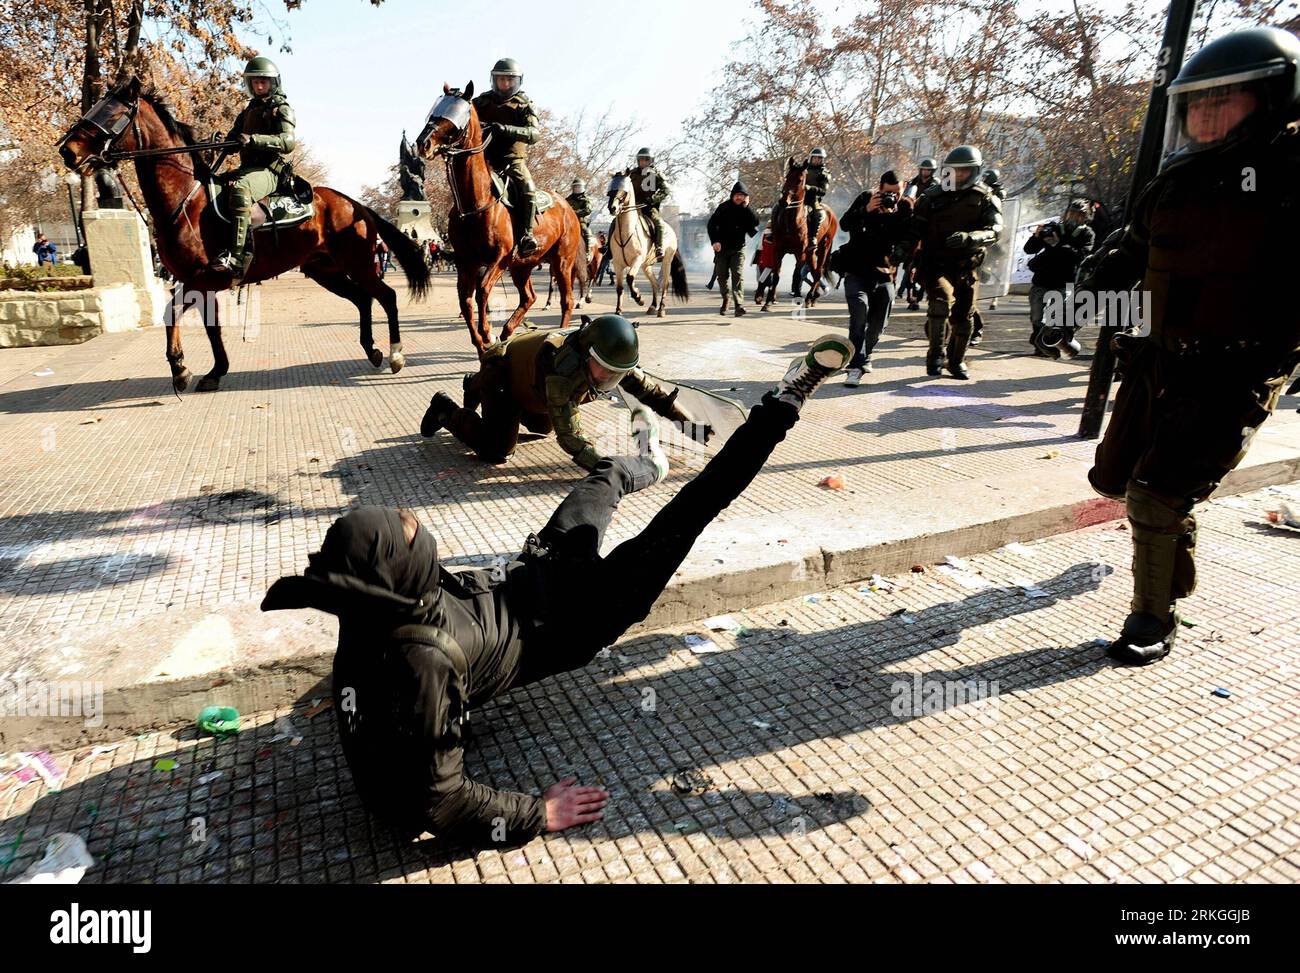 Bildnummer: 55595664 Datum: 14.07.2011 Copyright: imago/Xinhua (110715) -- SANTIAGO, 15. Juli 2011 (Xinhua) -- Polizisten treffen auf Studenten während des landesweiten Protestes, der am 14. Juli 2011 in Santiago (Chile) mehr Mittel für die öffentliche Bildung fordert. (Xinhua/Jorge Villegas) (wn) CHILE-SANTIAGO-STUDENTENPROTESTE PUBLICATIONxNOTxINxCHN Gesellschaft Unruh Ausschreitungen Straßenschlacht xtm 2011 quer Highlight Premiumd o0 Gewalt Kampf Straßenkampf Polizist Polizei Bildnummer 55595664 Datum 14 07 2011 Copyright Imago XINHUA 110 715 Santiago 15 Juli 2011 XINHUA Polizist Clash with Students du Stockfoto